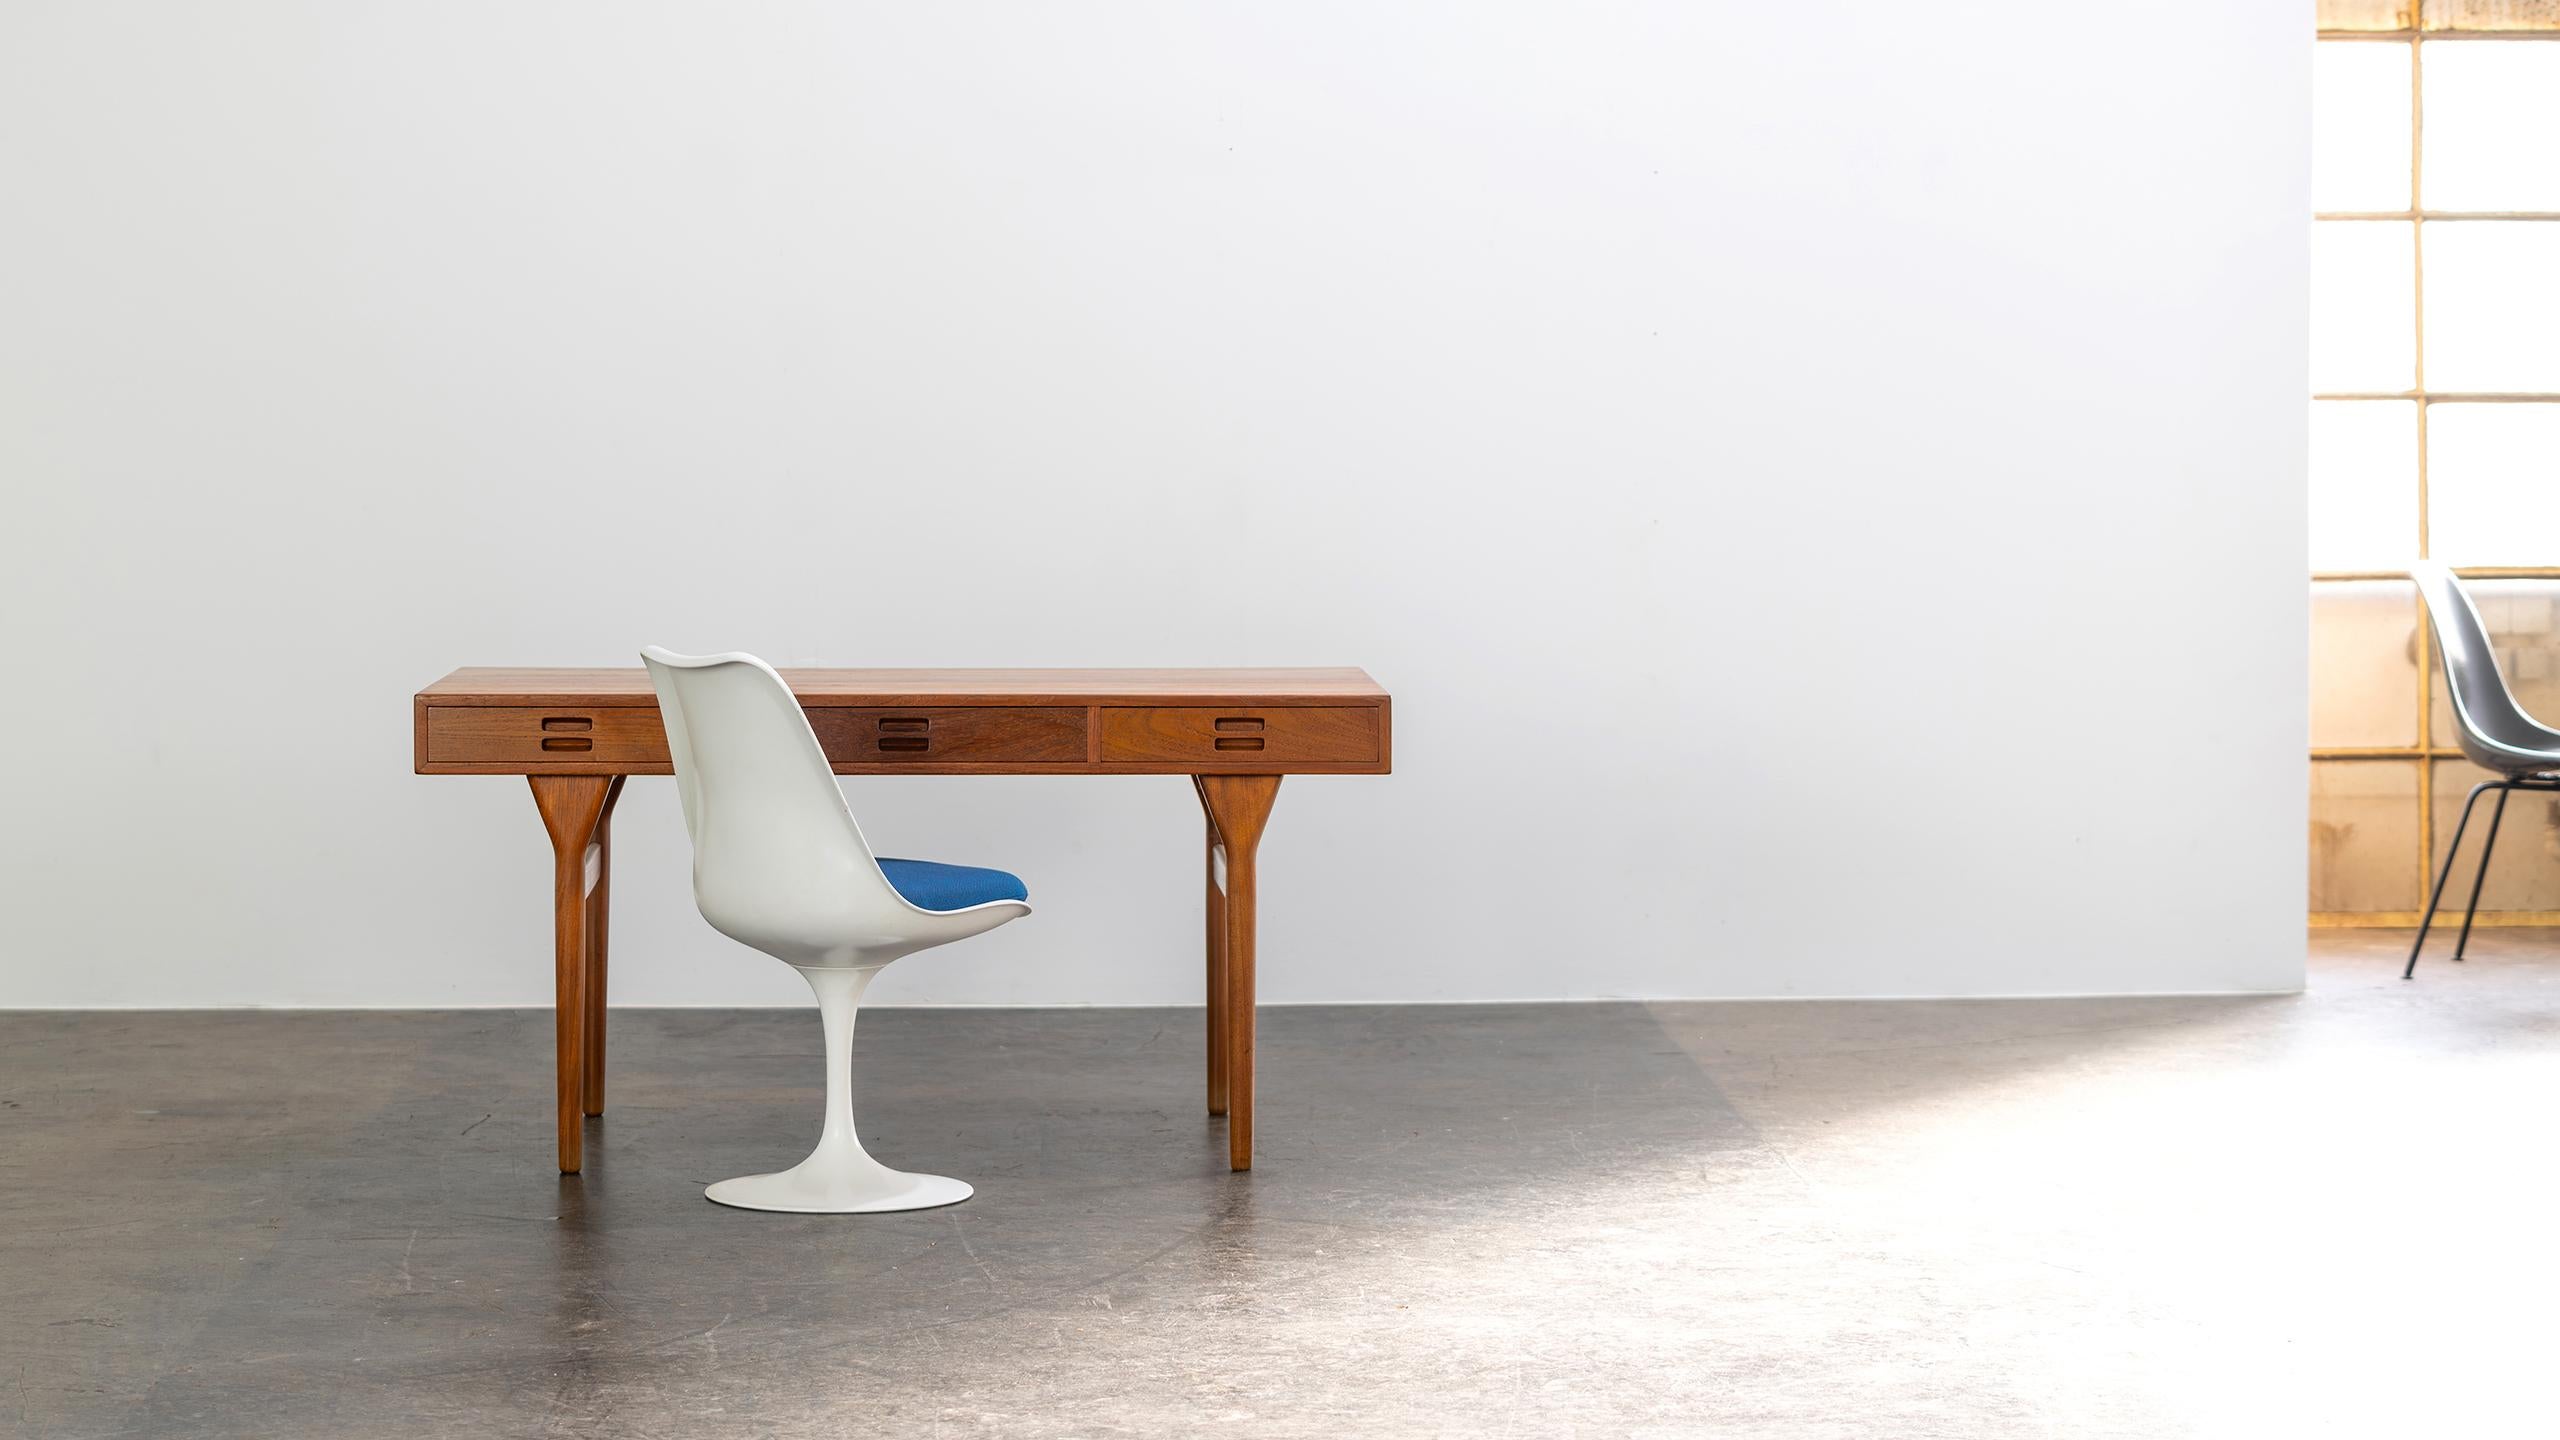 Ce design élégant de Nanna & Jørgen Eleg sert de bureau, de table d'écriture, de table de bibliothèque ou même de table console dans un grand espace. 

La forme dépouillée et minimale est ravissante sous tous les angles. 
Construit de manière